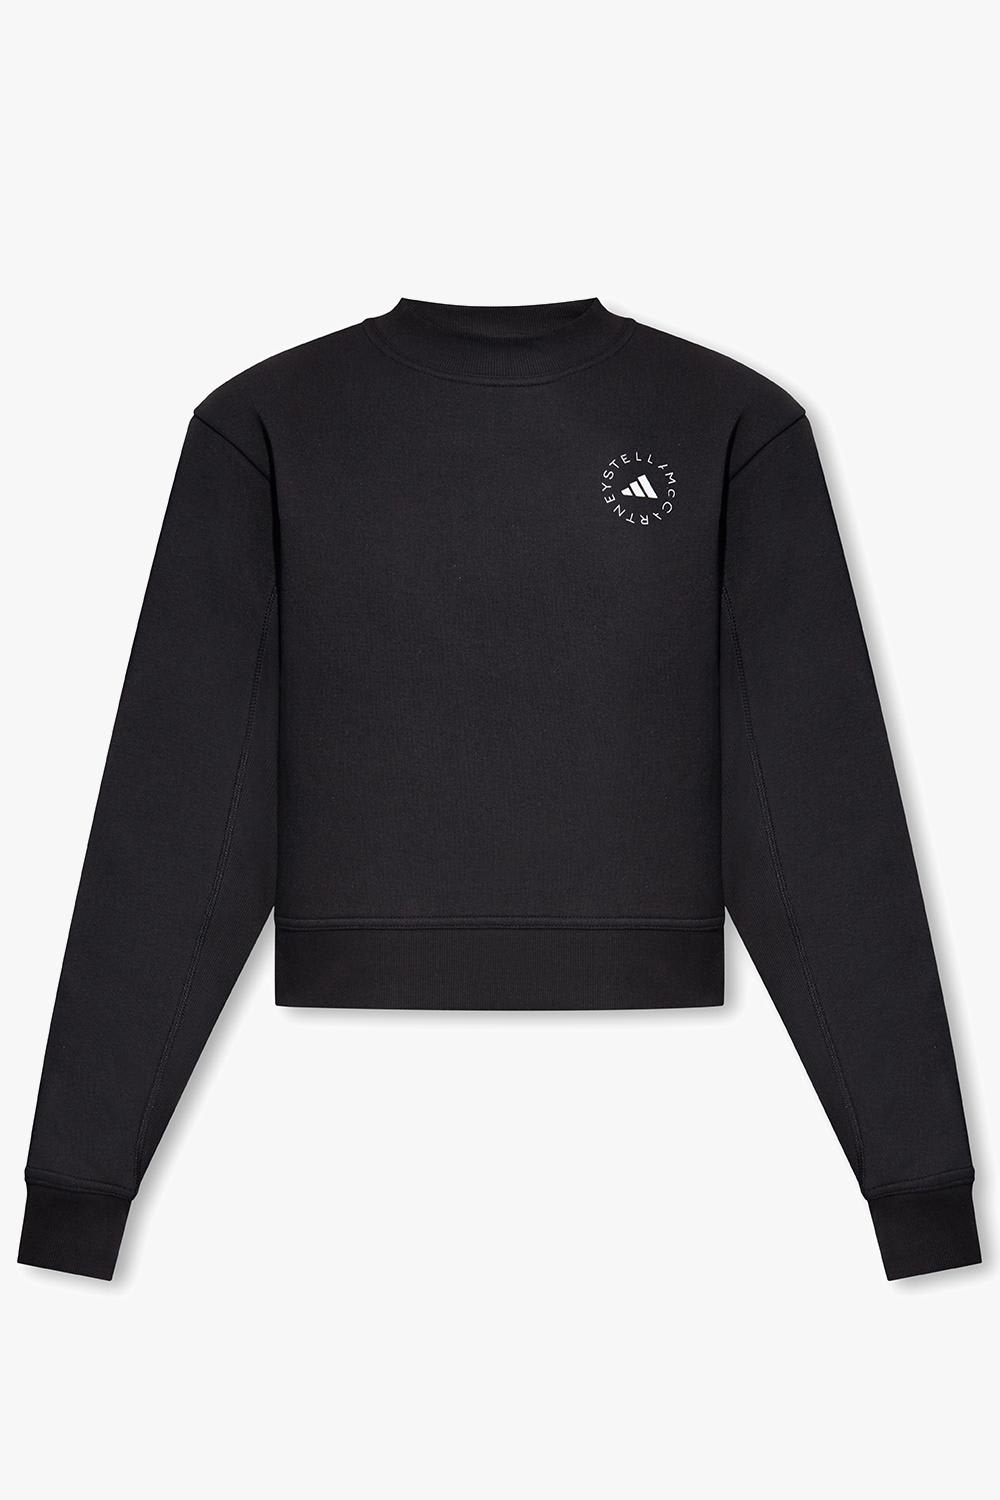 Shop Adidas By Stella Mccartney Sweatshirt With Logo